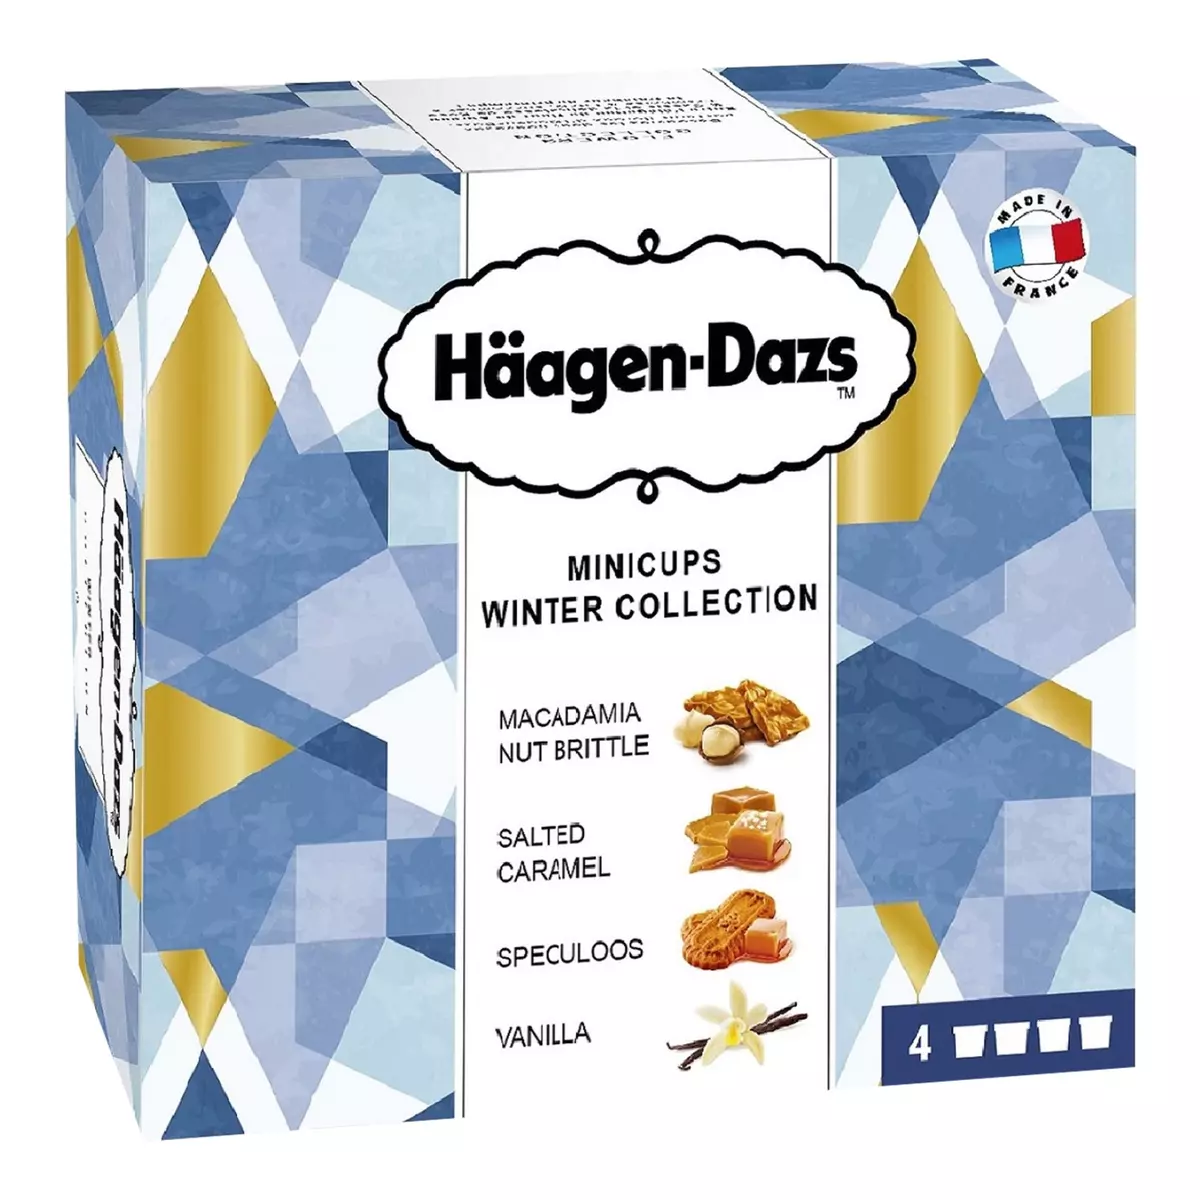 HAAGEN DAZS Häagen Dazs mini cup winter collection x4 -348g